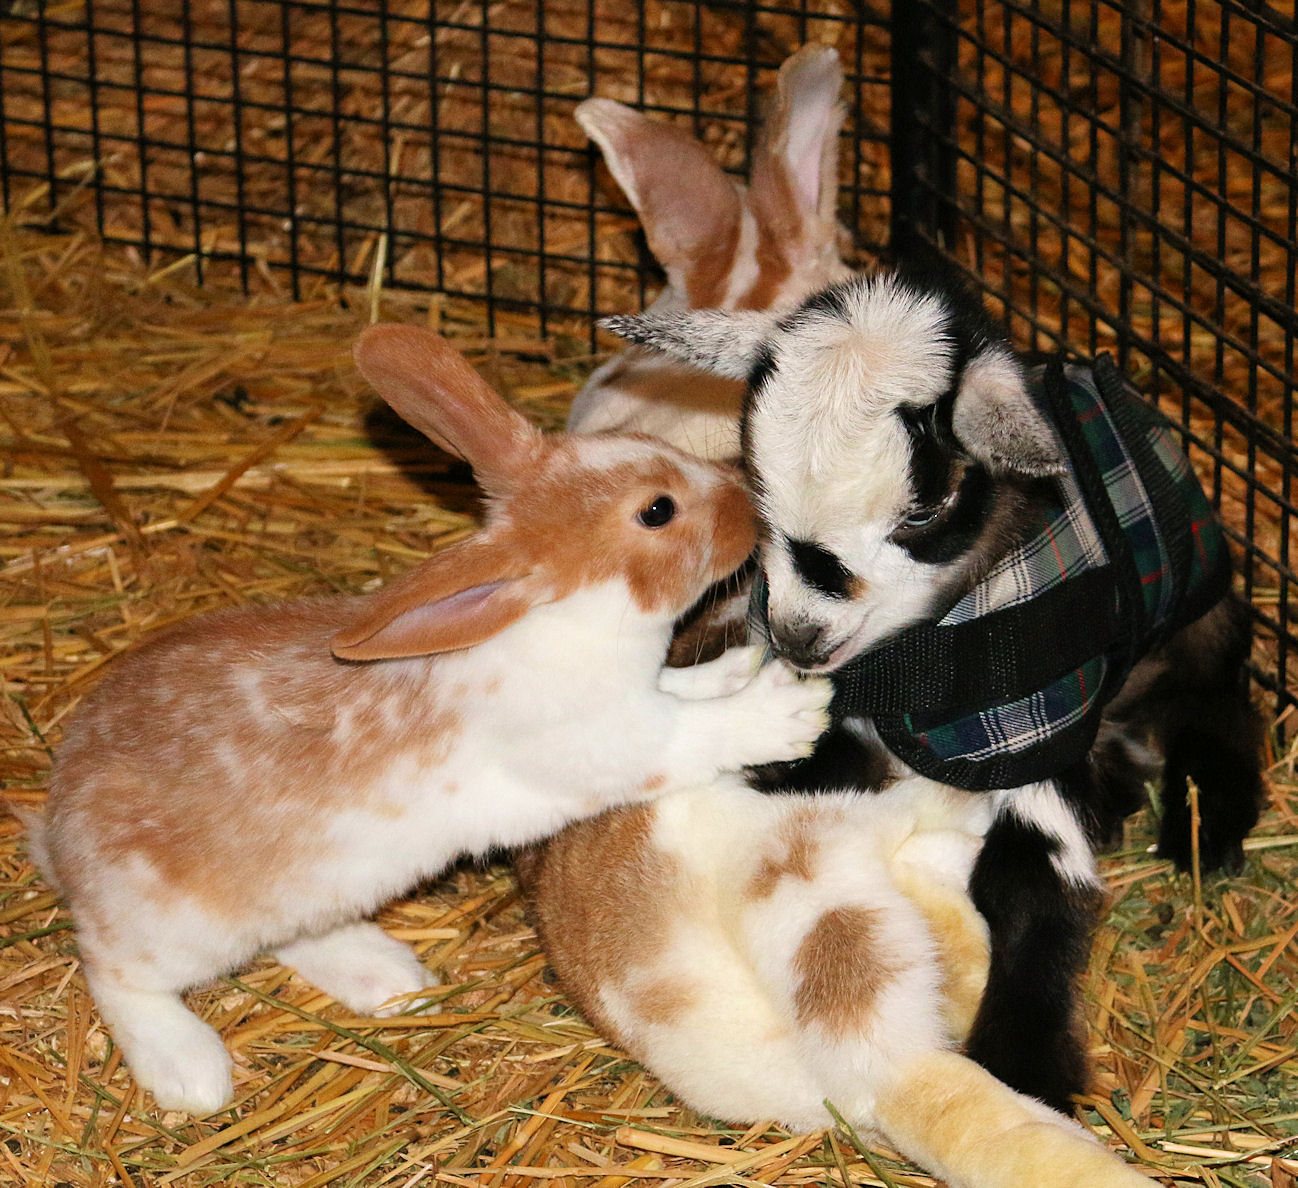 Triumph gets bunny kisses